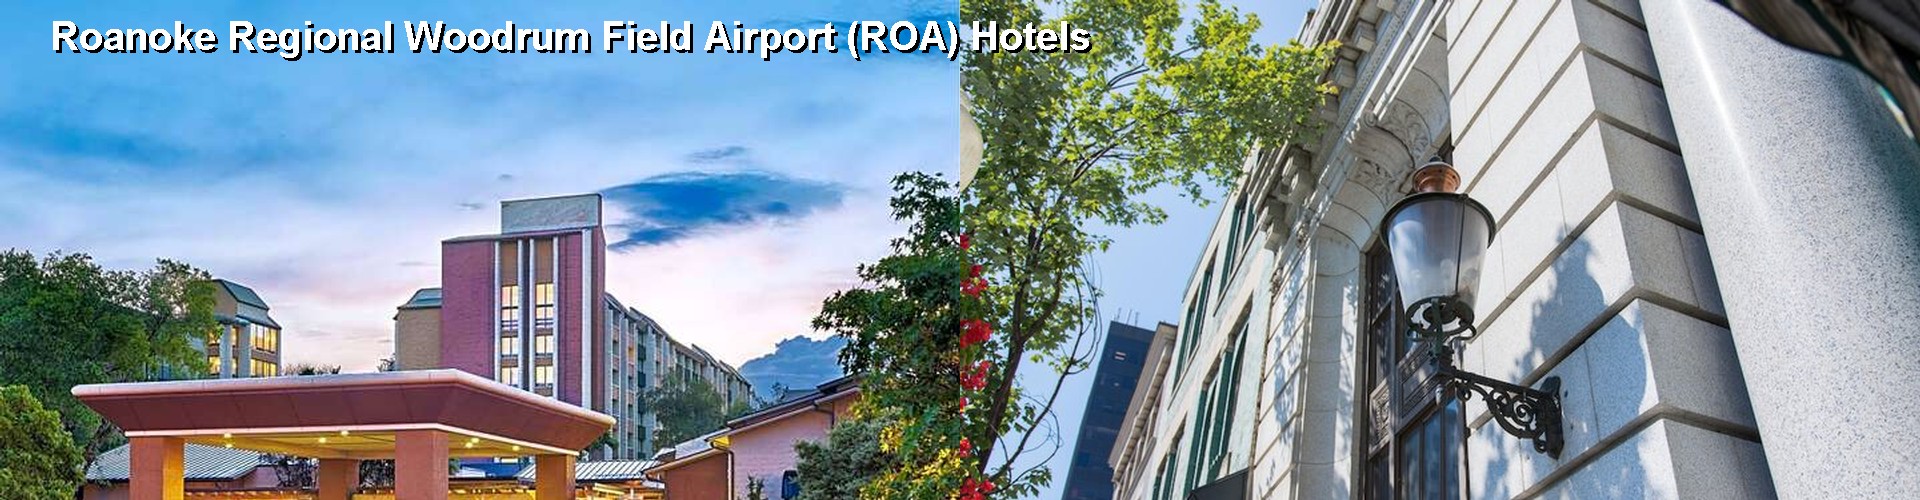 5 Best Hotels near Roanoke Regional Woodrum Field Airport (ROA)